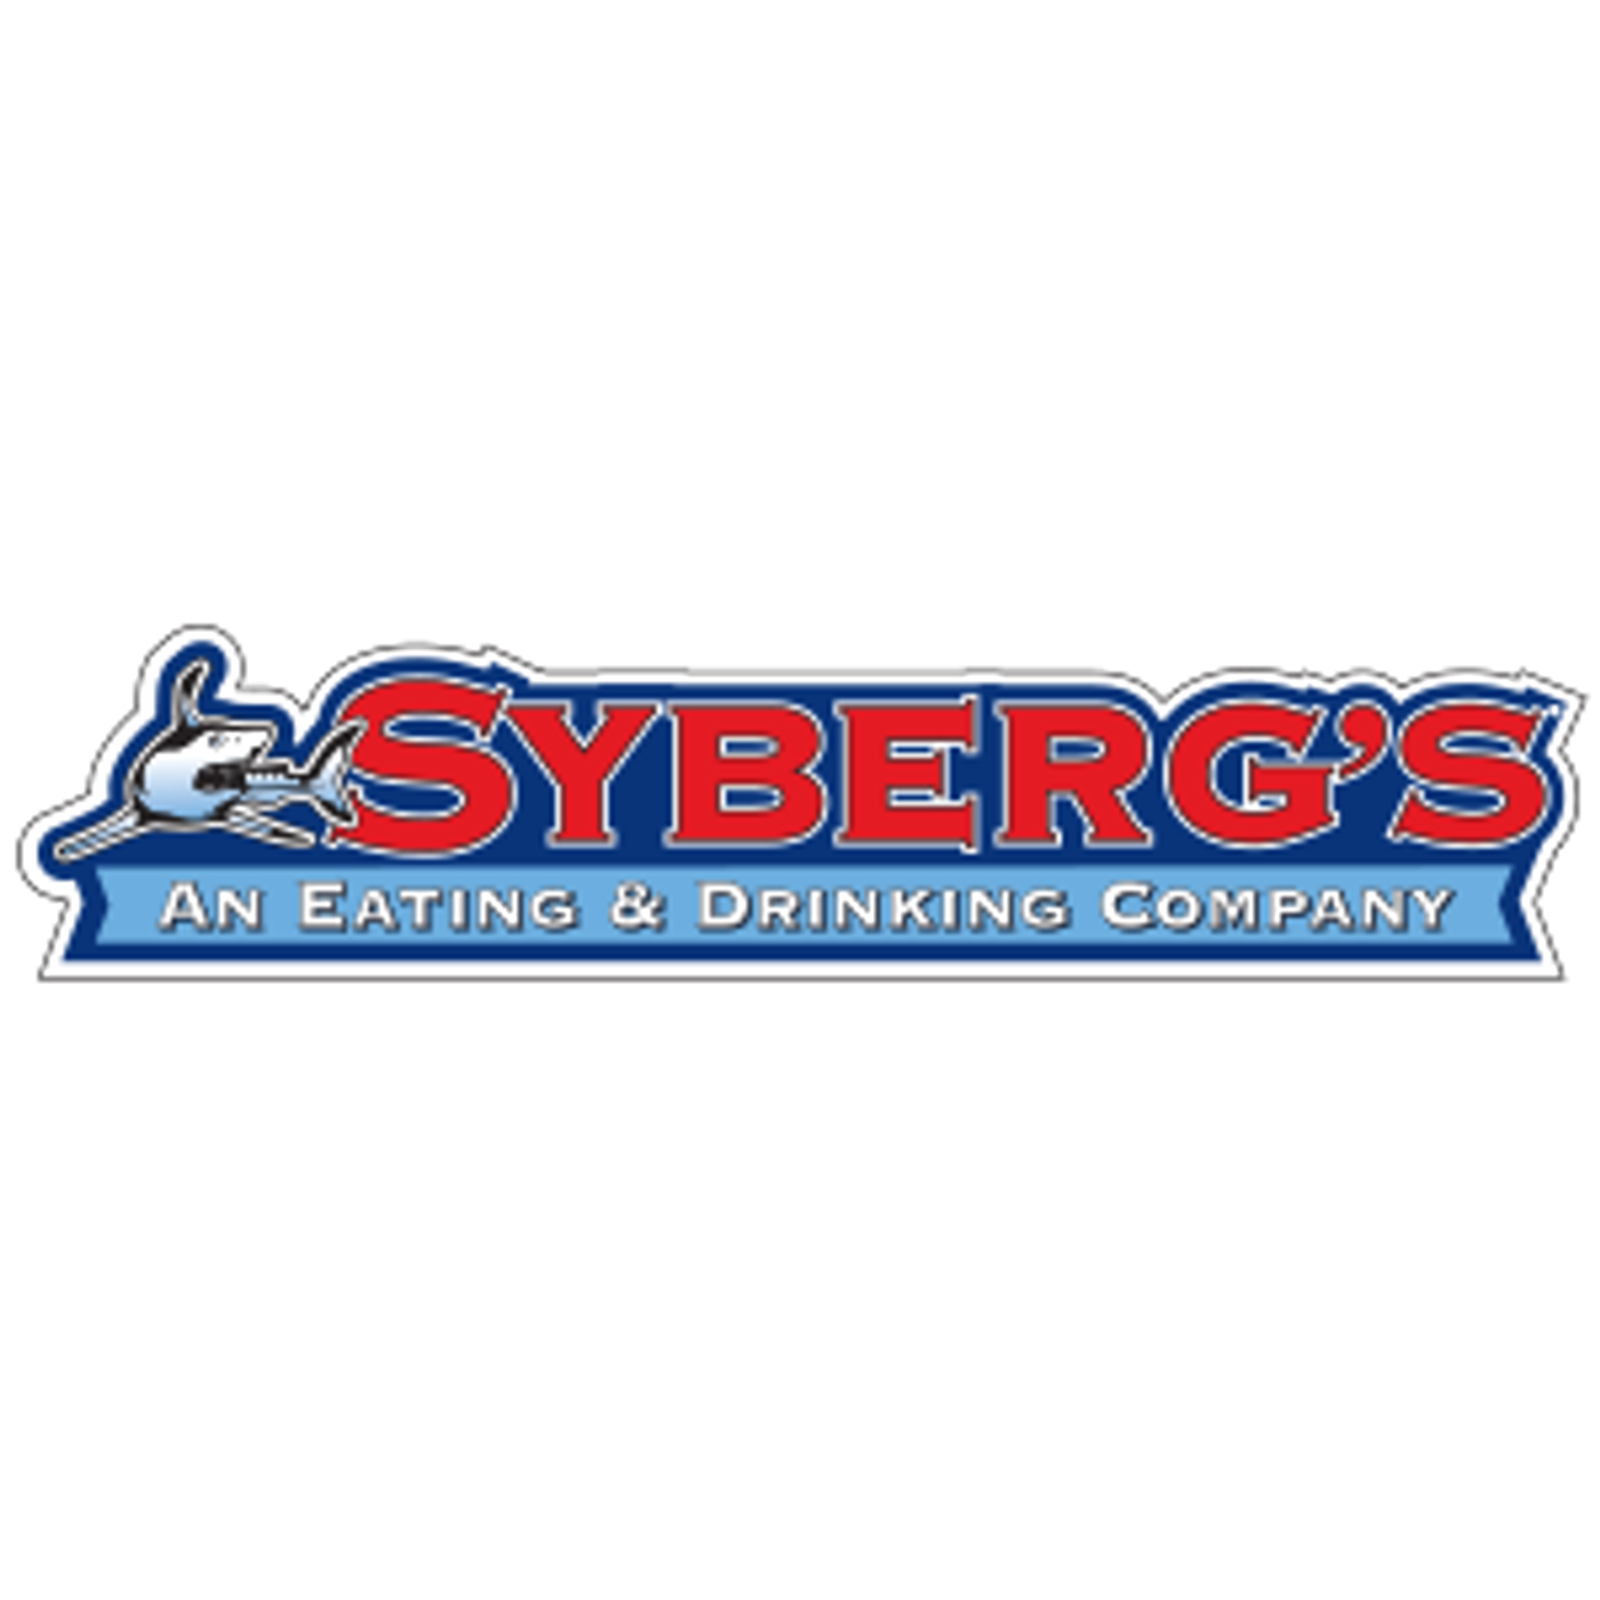 Syberg's